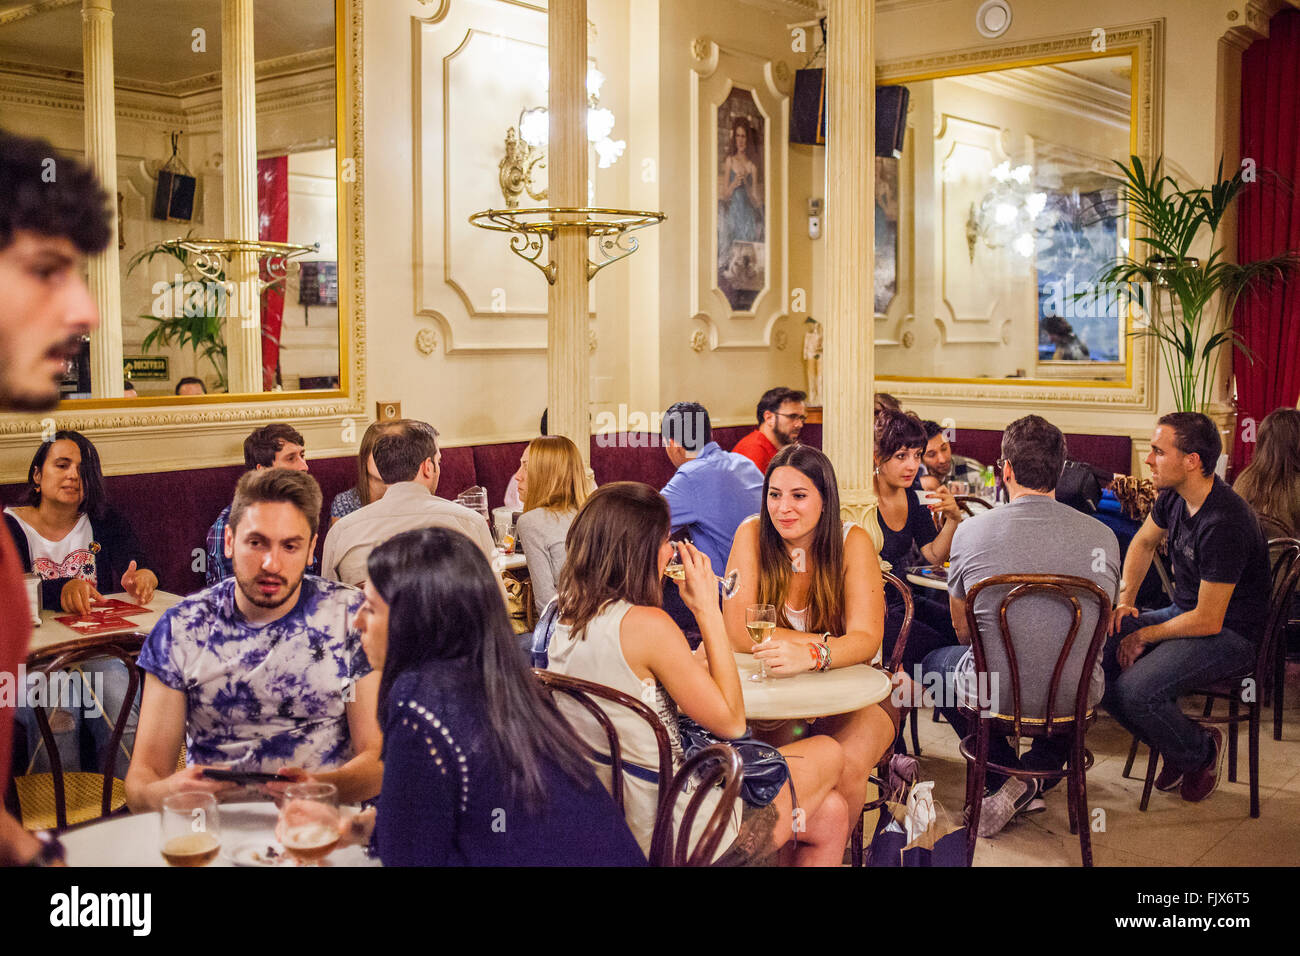 Cafe Manuela, Calle de San Vicente Ferrer, 29 à Malasana trimestre. Madrid, Espagne Banque D'Images